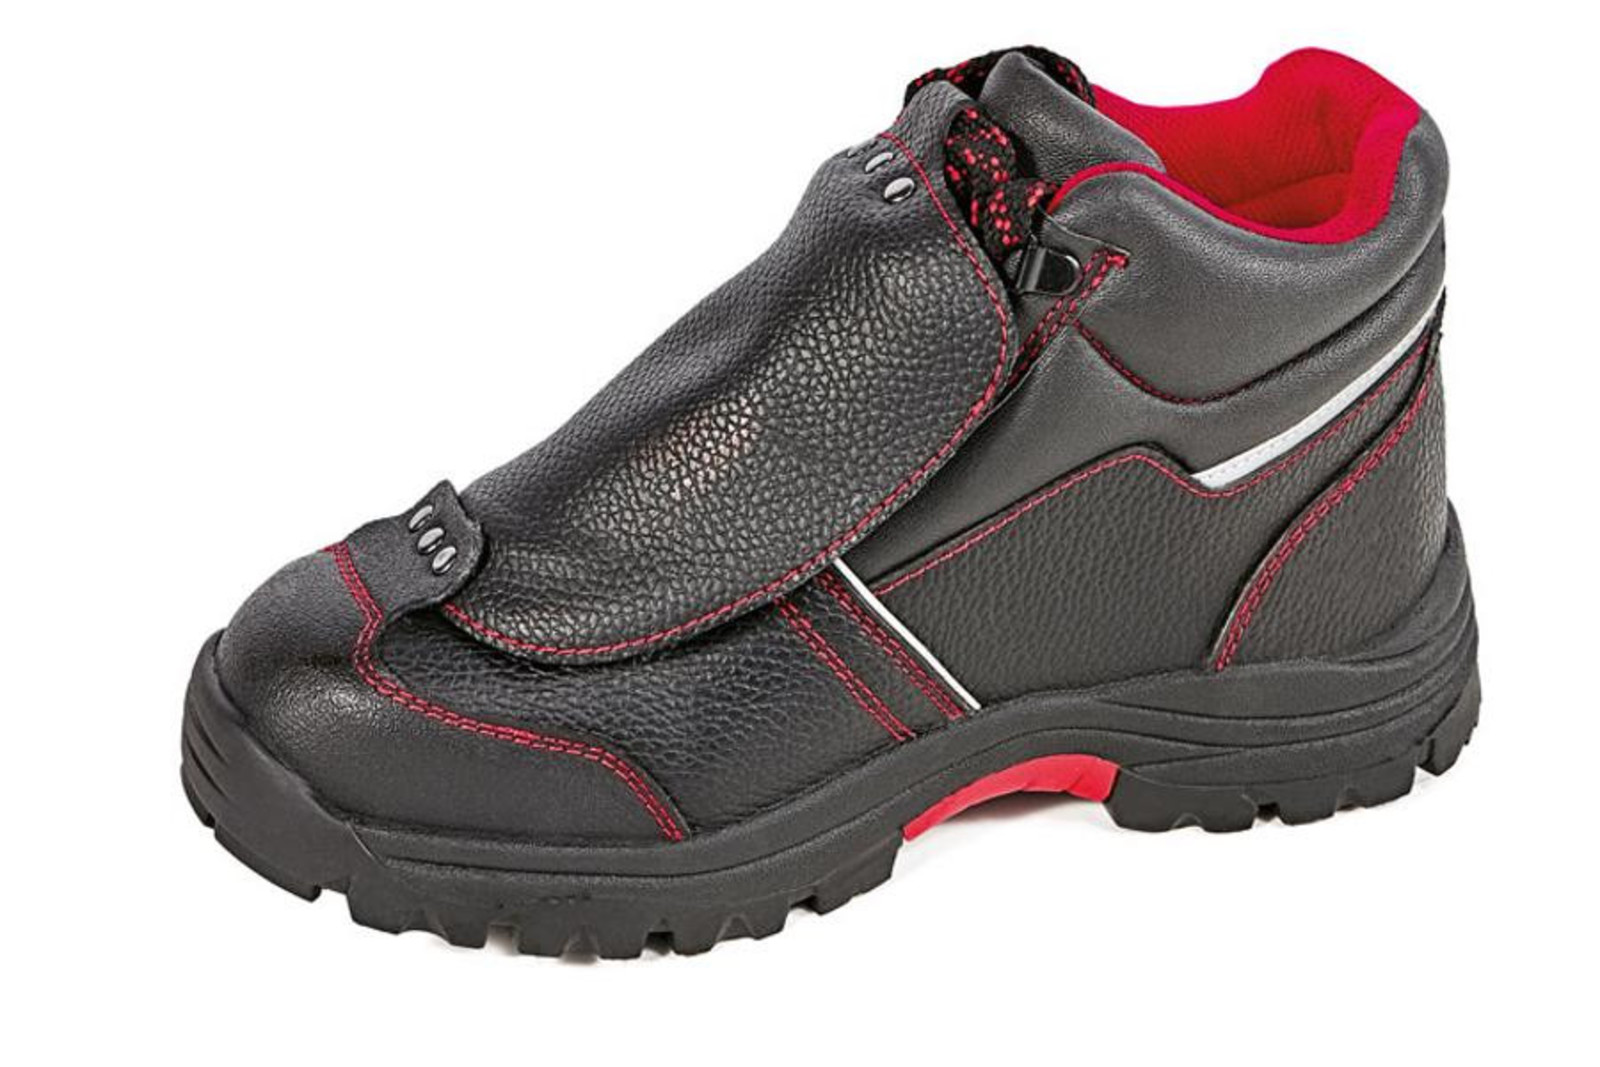 Bezpečnostná členková obuv Cerva Steeler Metatarsal S3 HRO M SRA  - veľkosť: 44, farba: čierna